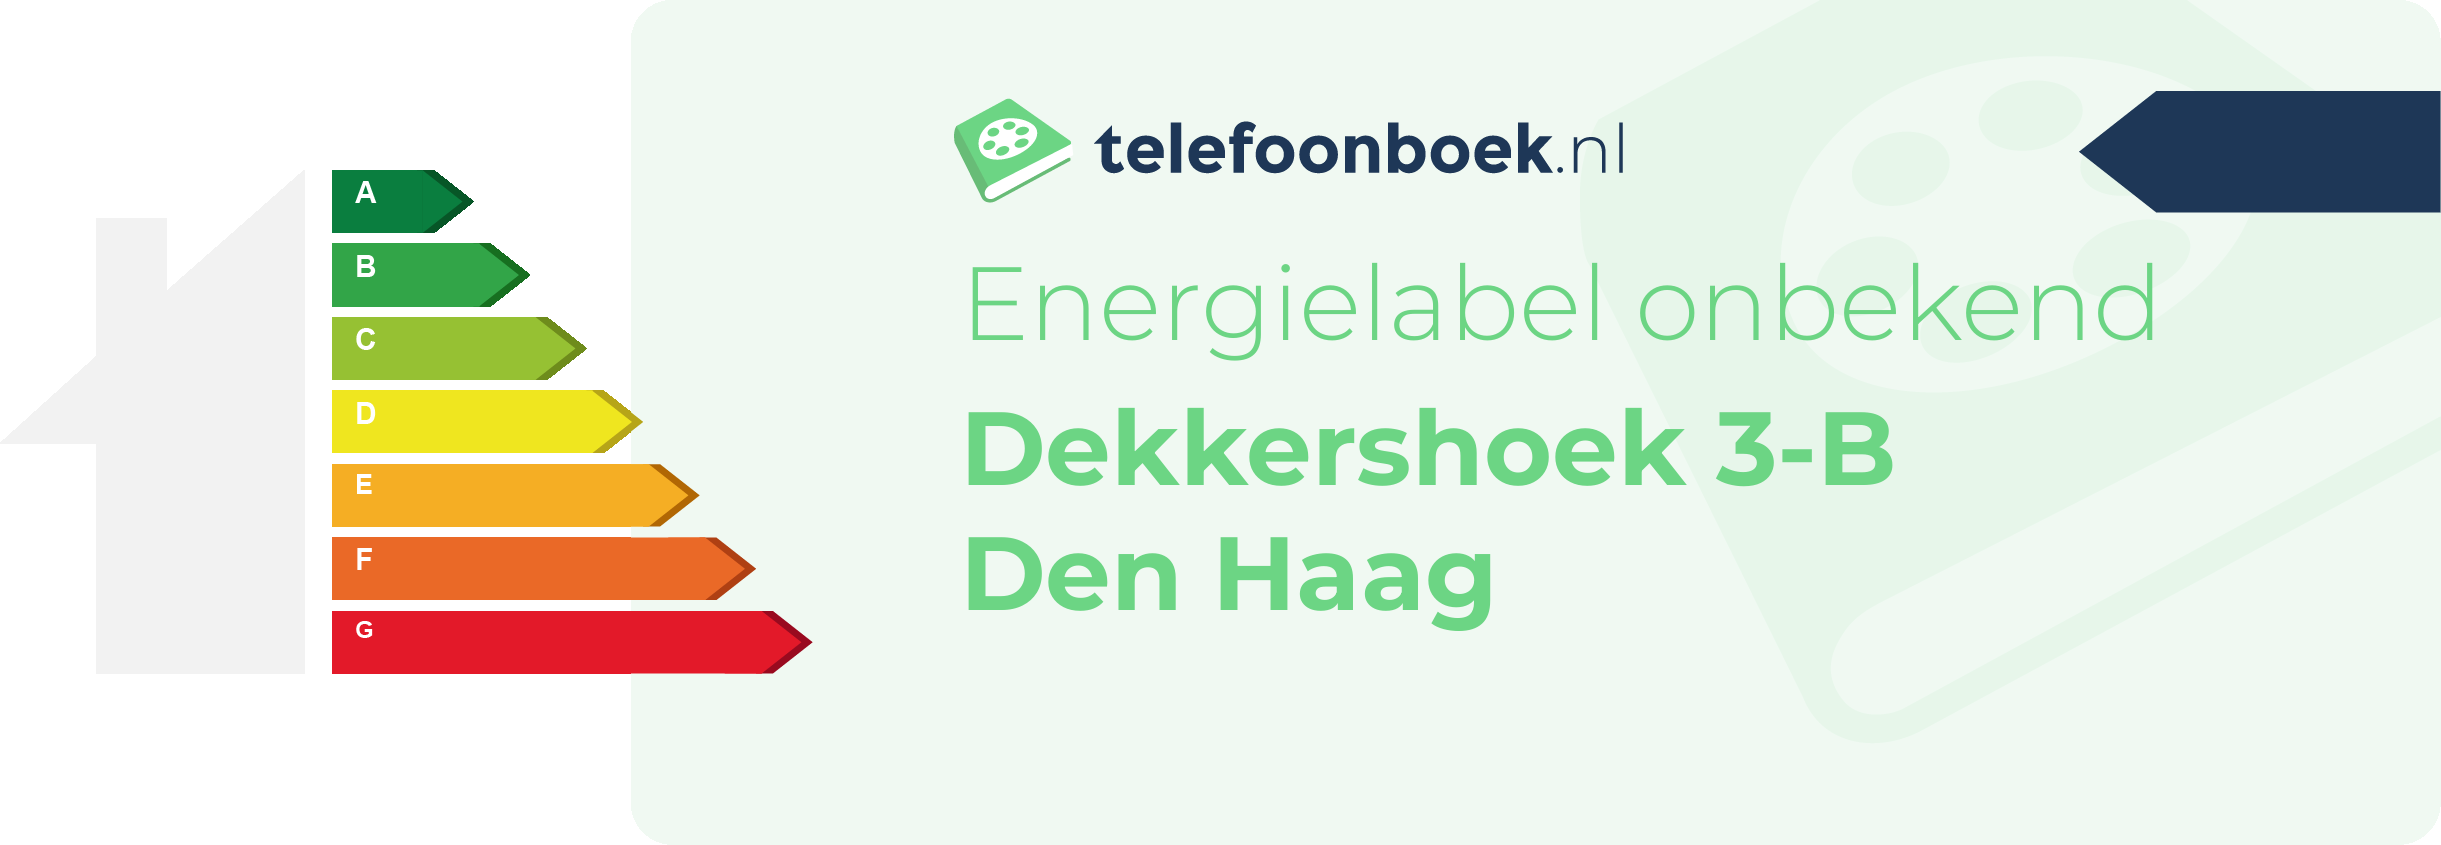 Energielabel Dekkershoek 3-B Den Haag